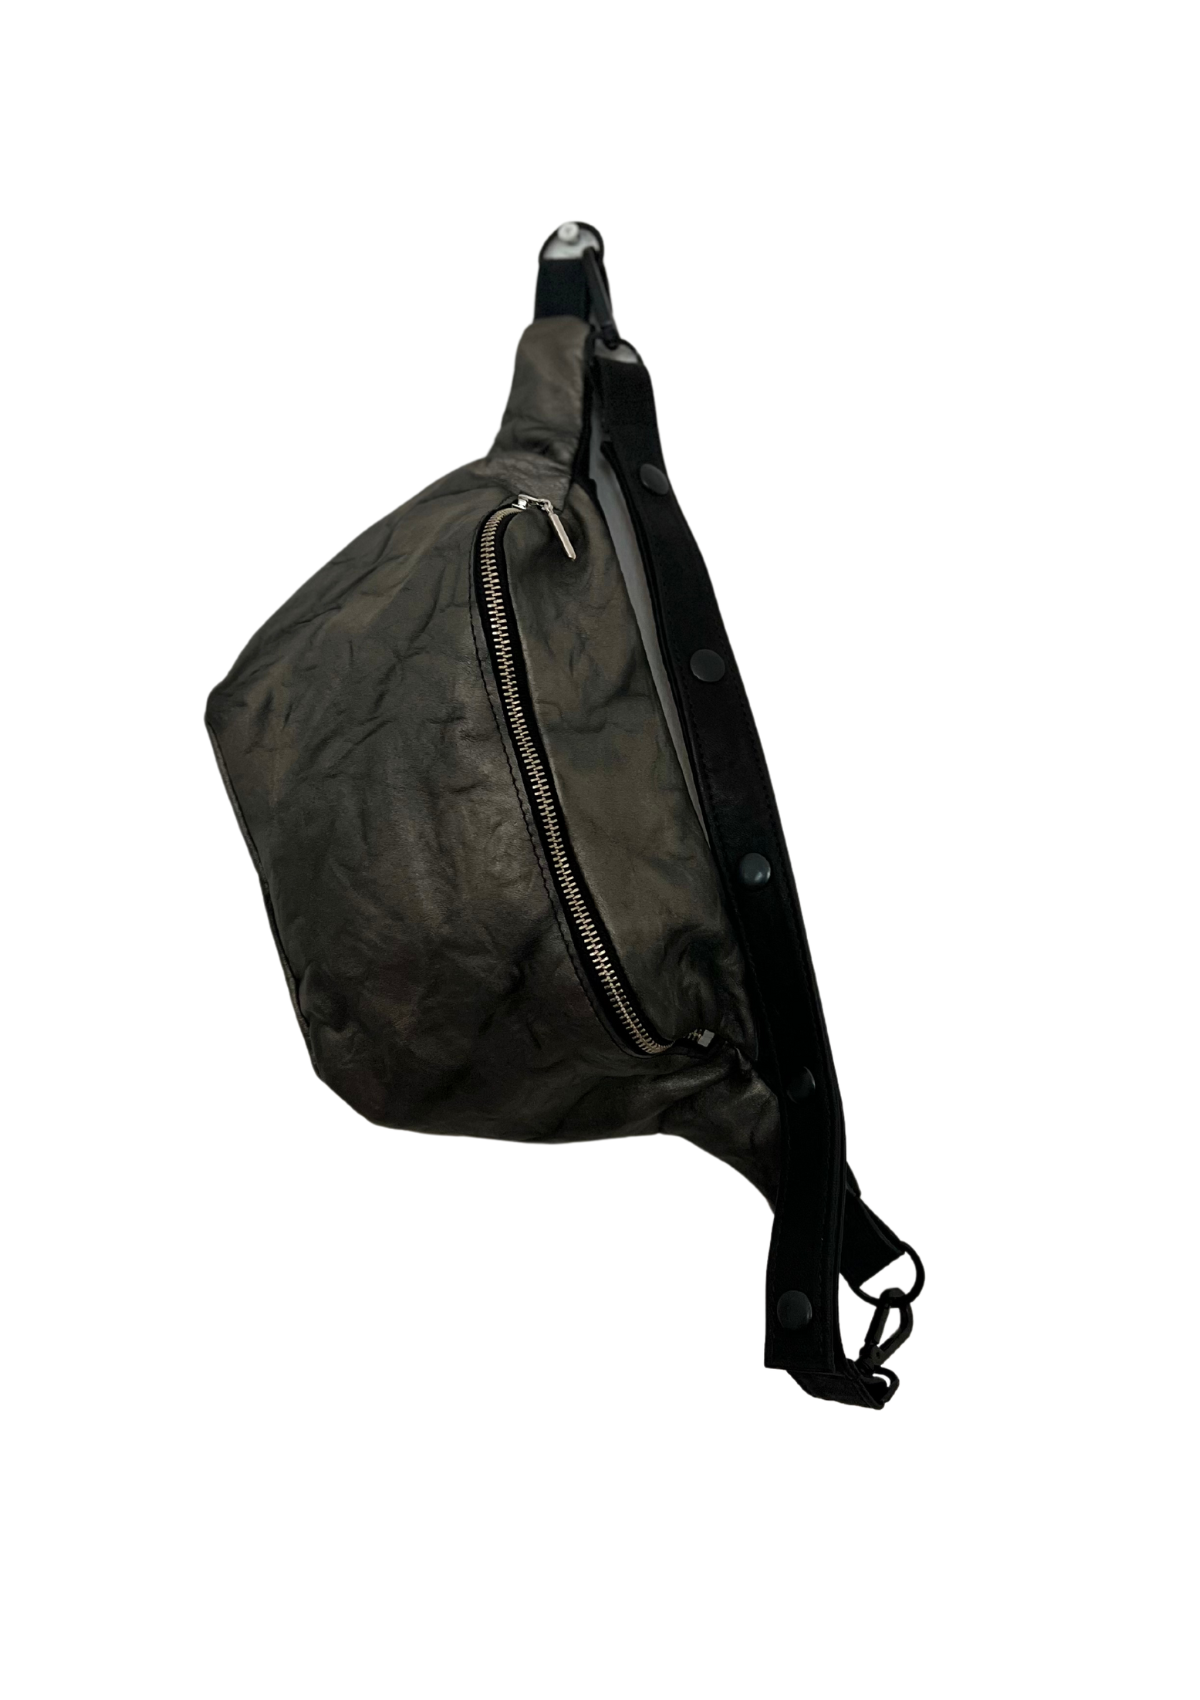 KORZO UTILITY CROSS BODY BAG | Metallic Crushed Charcoal and black leather combo